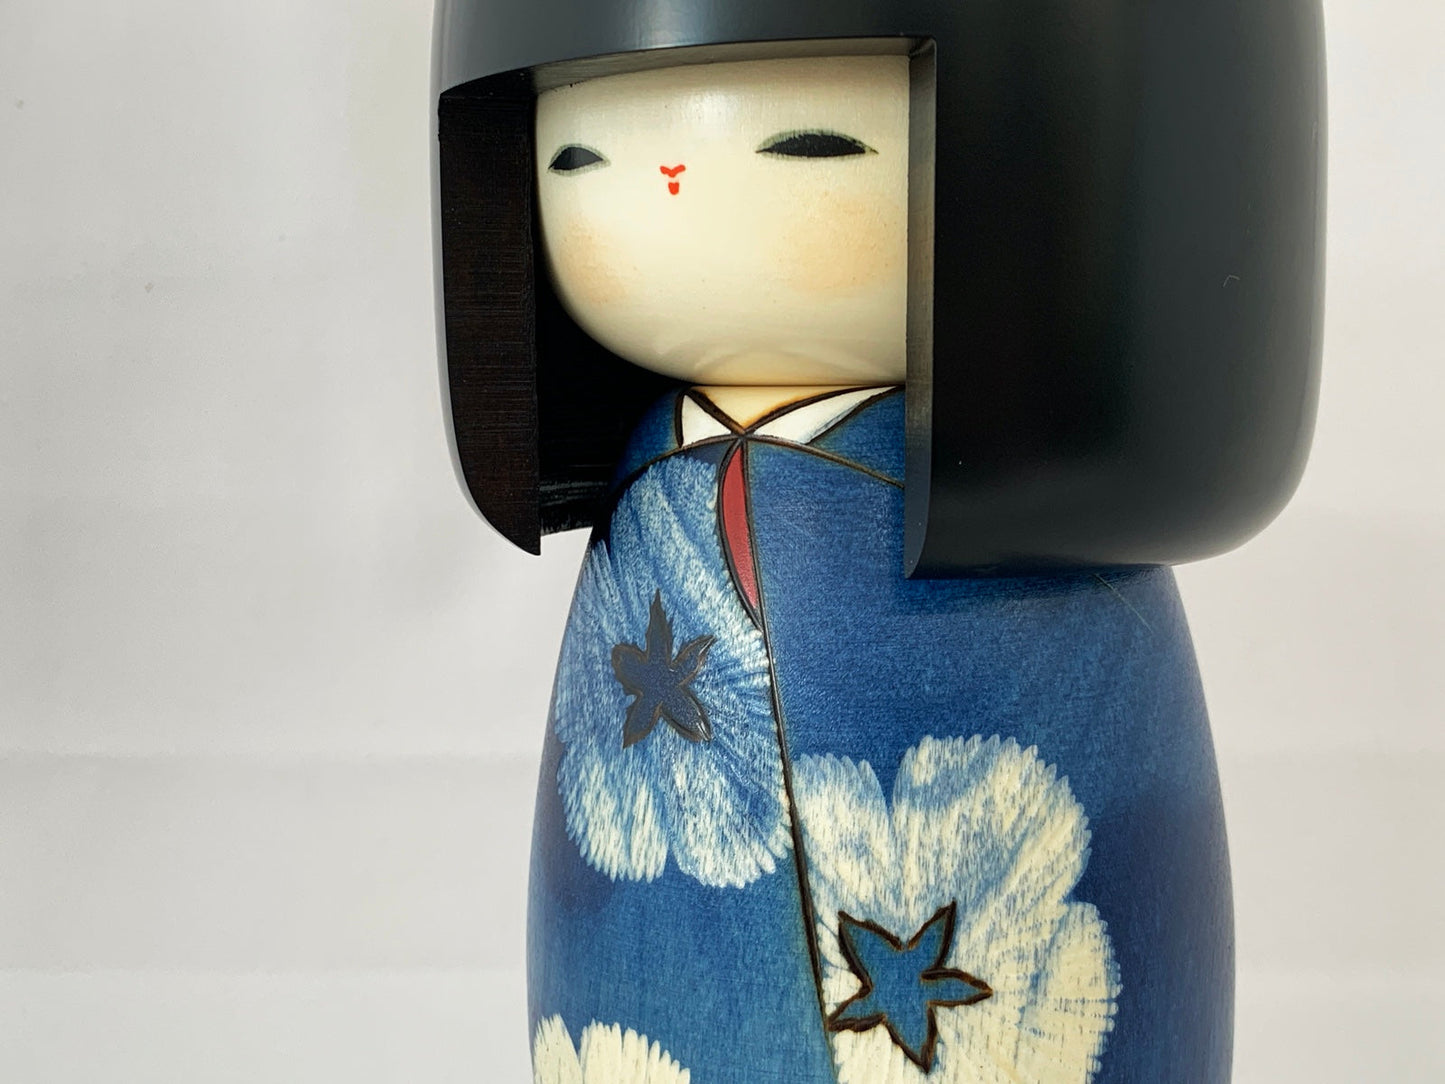 Kokeshi houten pop | Aiko 